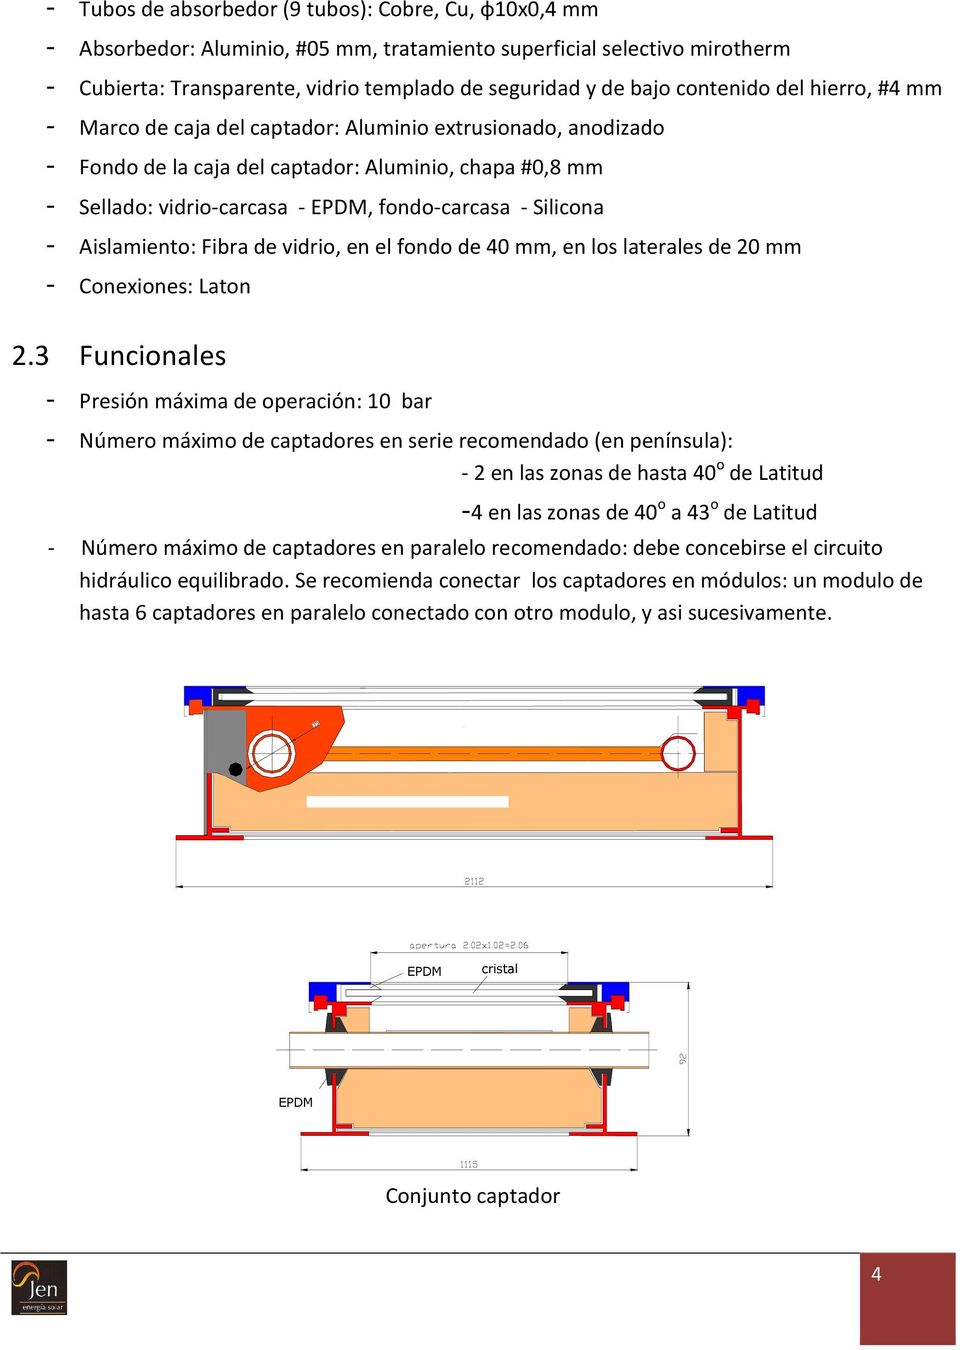 Silicona - Aislamiento: Fibra de vidrio, en el fondo de 40 mm, en los laterales de 20 mm - Conexiones: Laton 2.